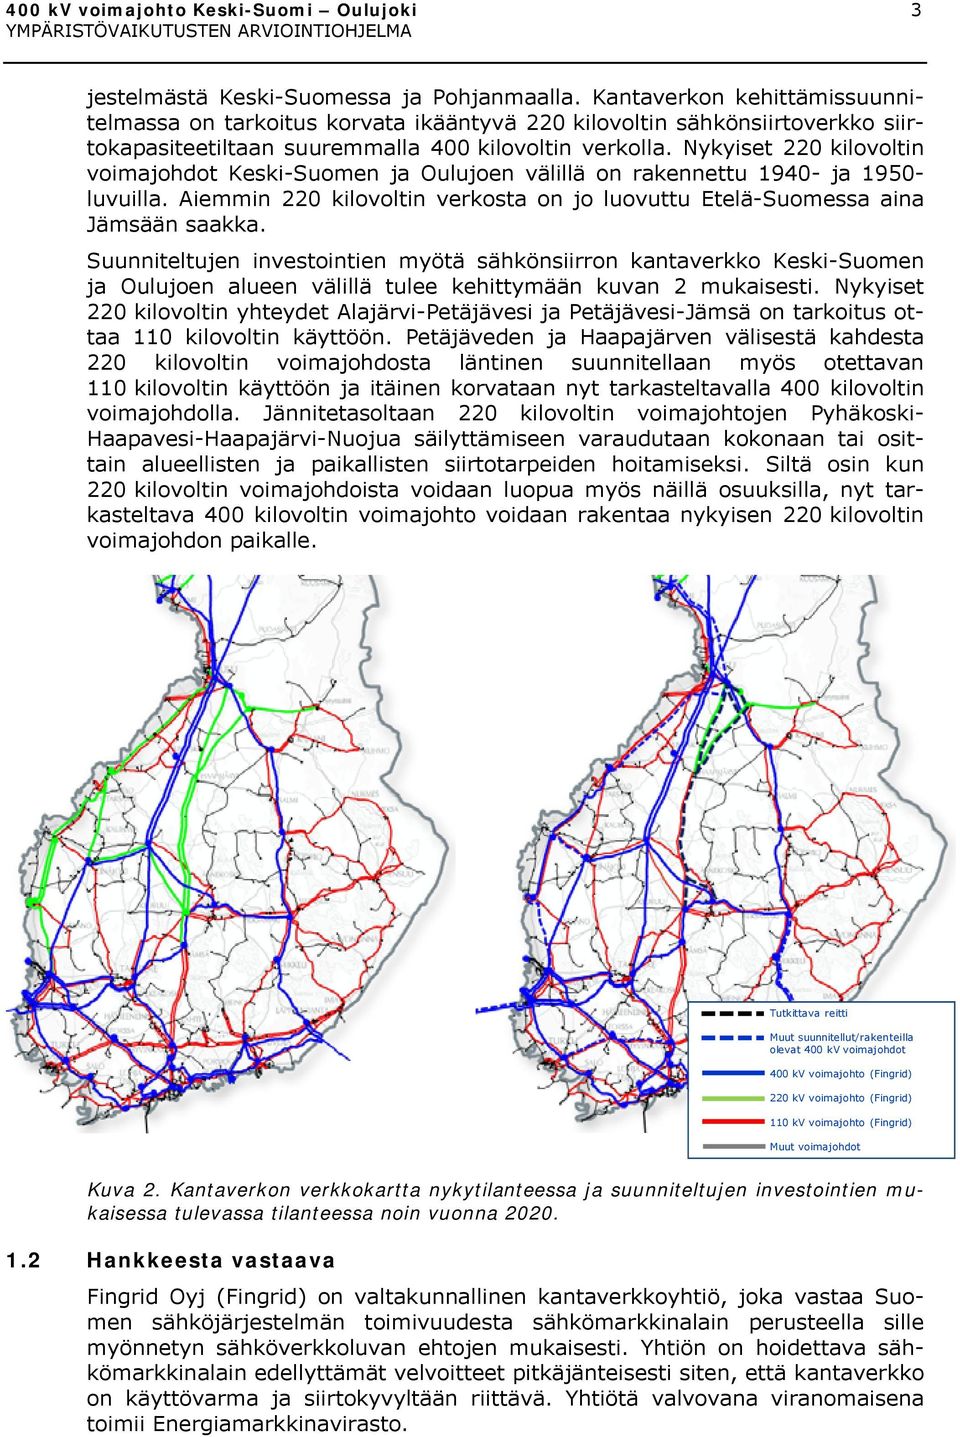 Nykyiset 220 kilovoltin voimajohdot Keski-Suomen ja Oulujoen välillä on rakennettu 1940- ja 1950- luvuilla. Aiemmin 220 kilovoltin verkosta on jo luovuttu Etelä-Suomessa aina Jämsään saakka.